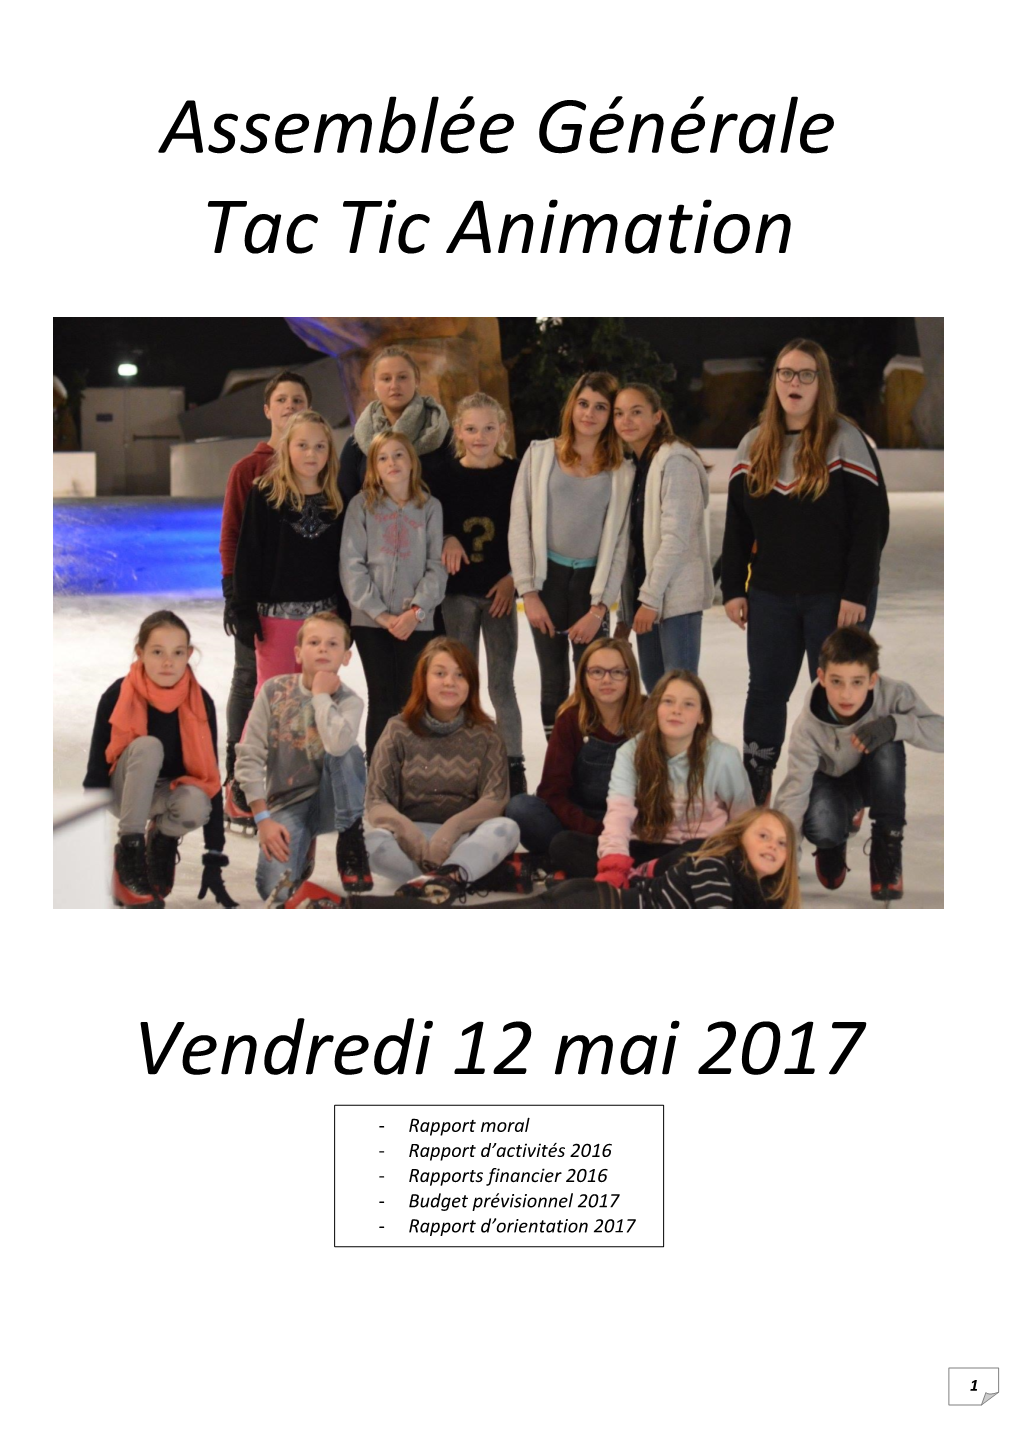 Assemblée Générale Tac Tic Animation